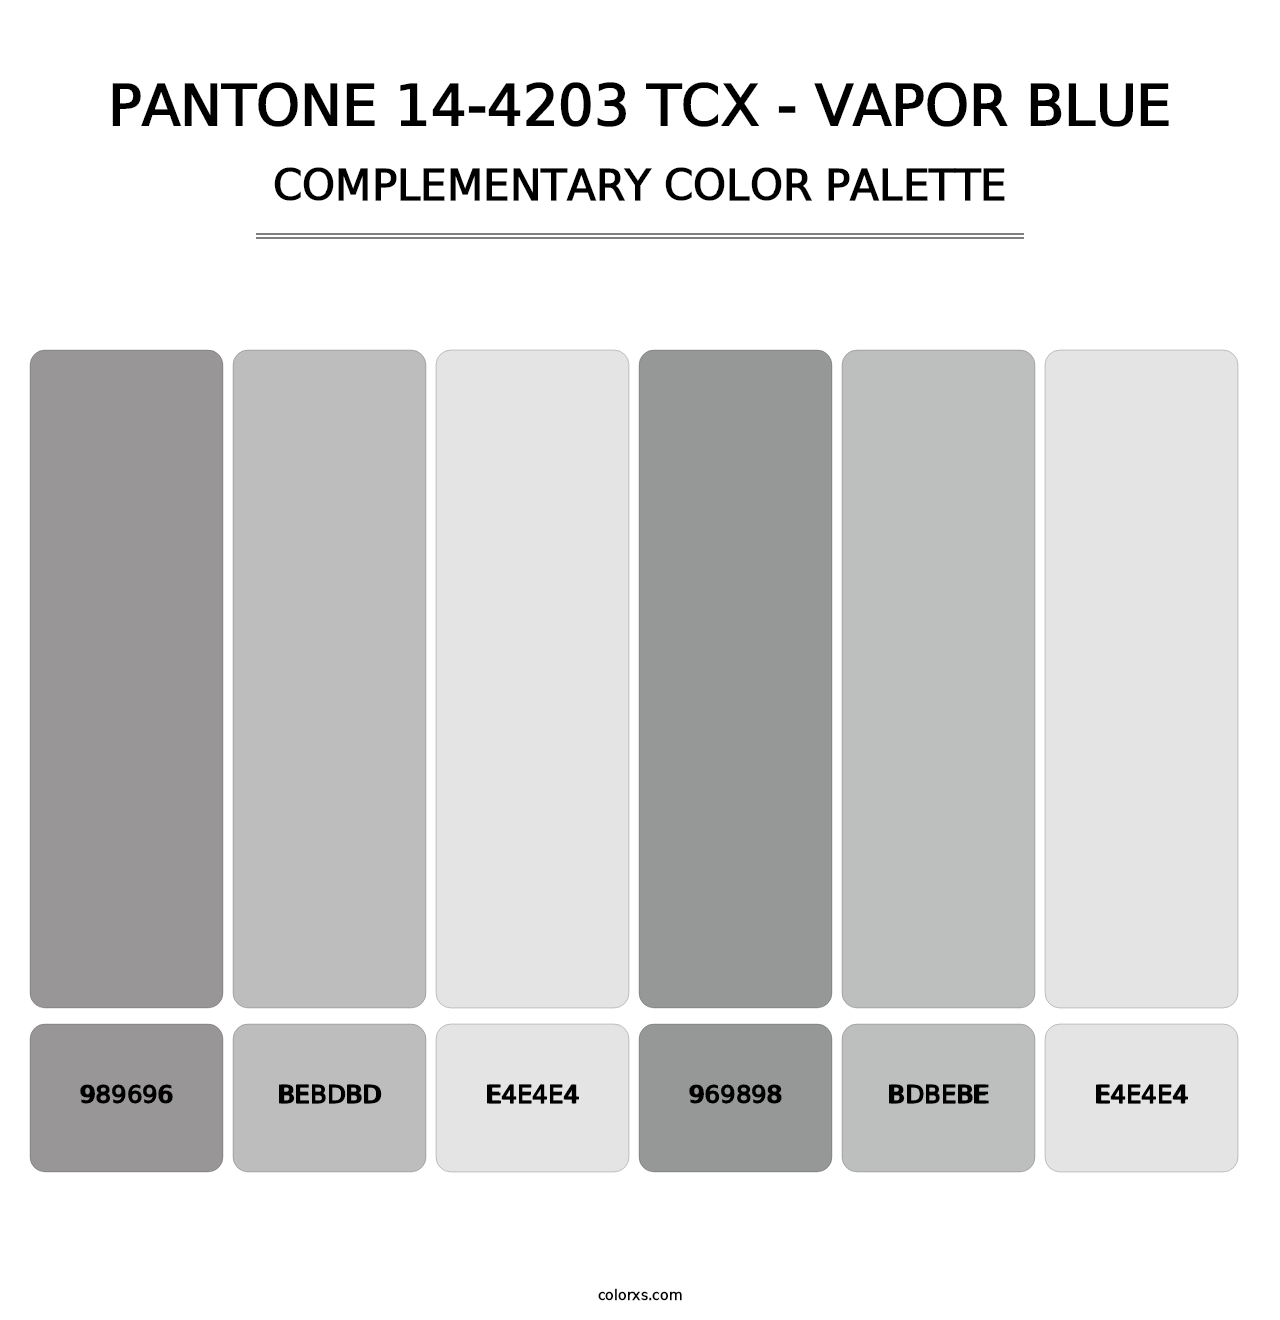 PANTONE 14-4203 TCX - Vapor Blue - Complementary Color Palette